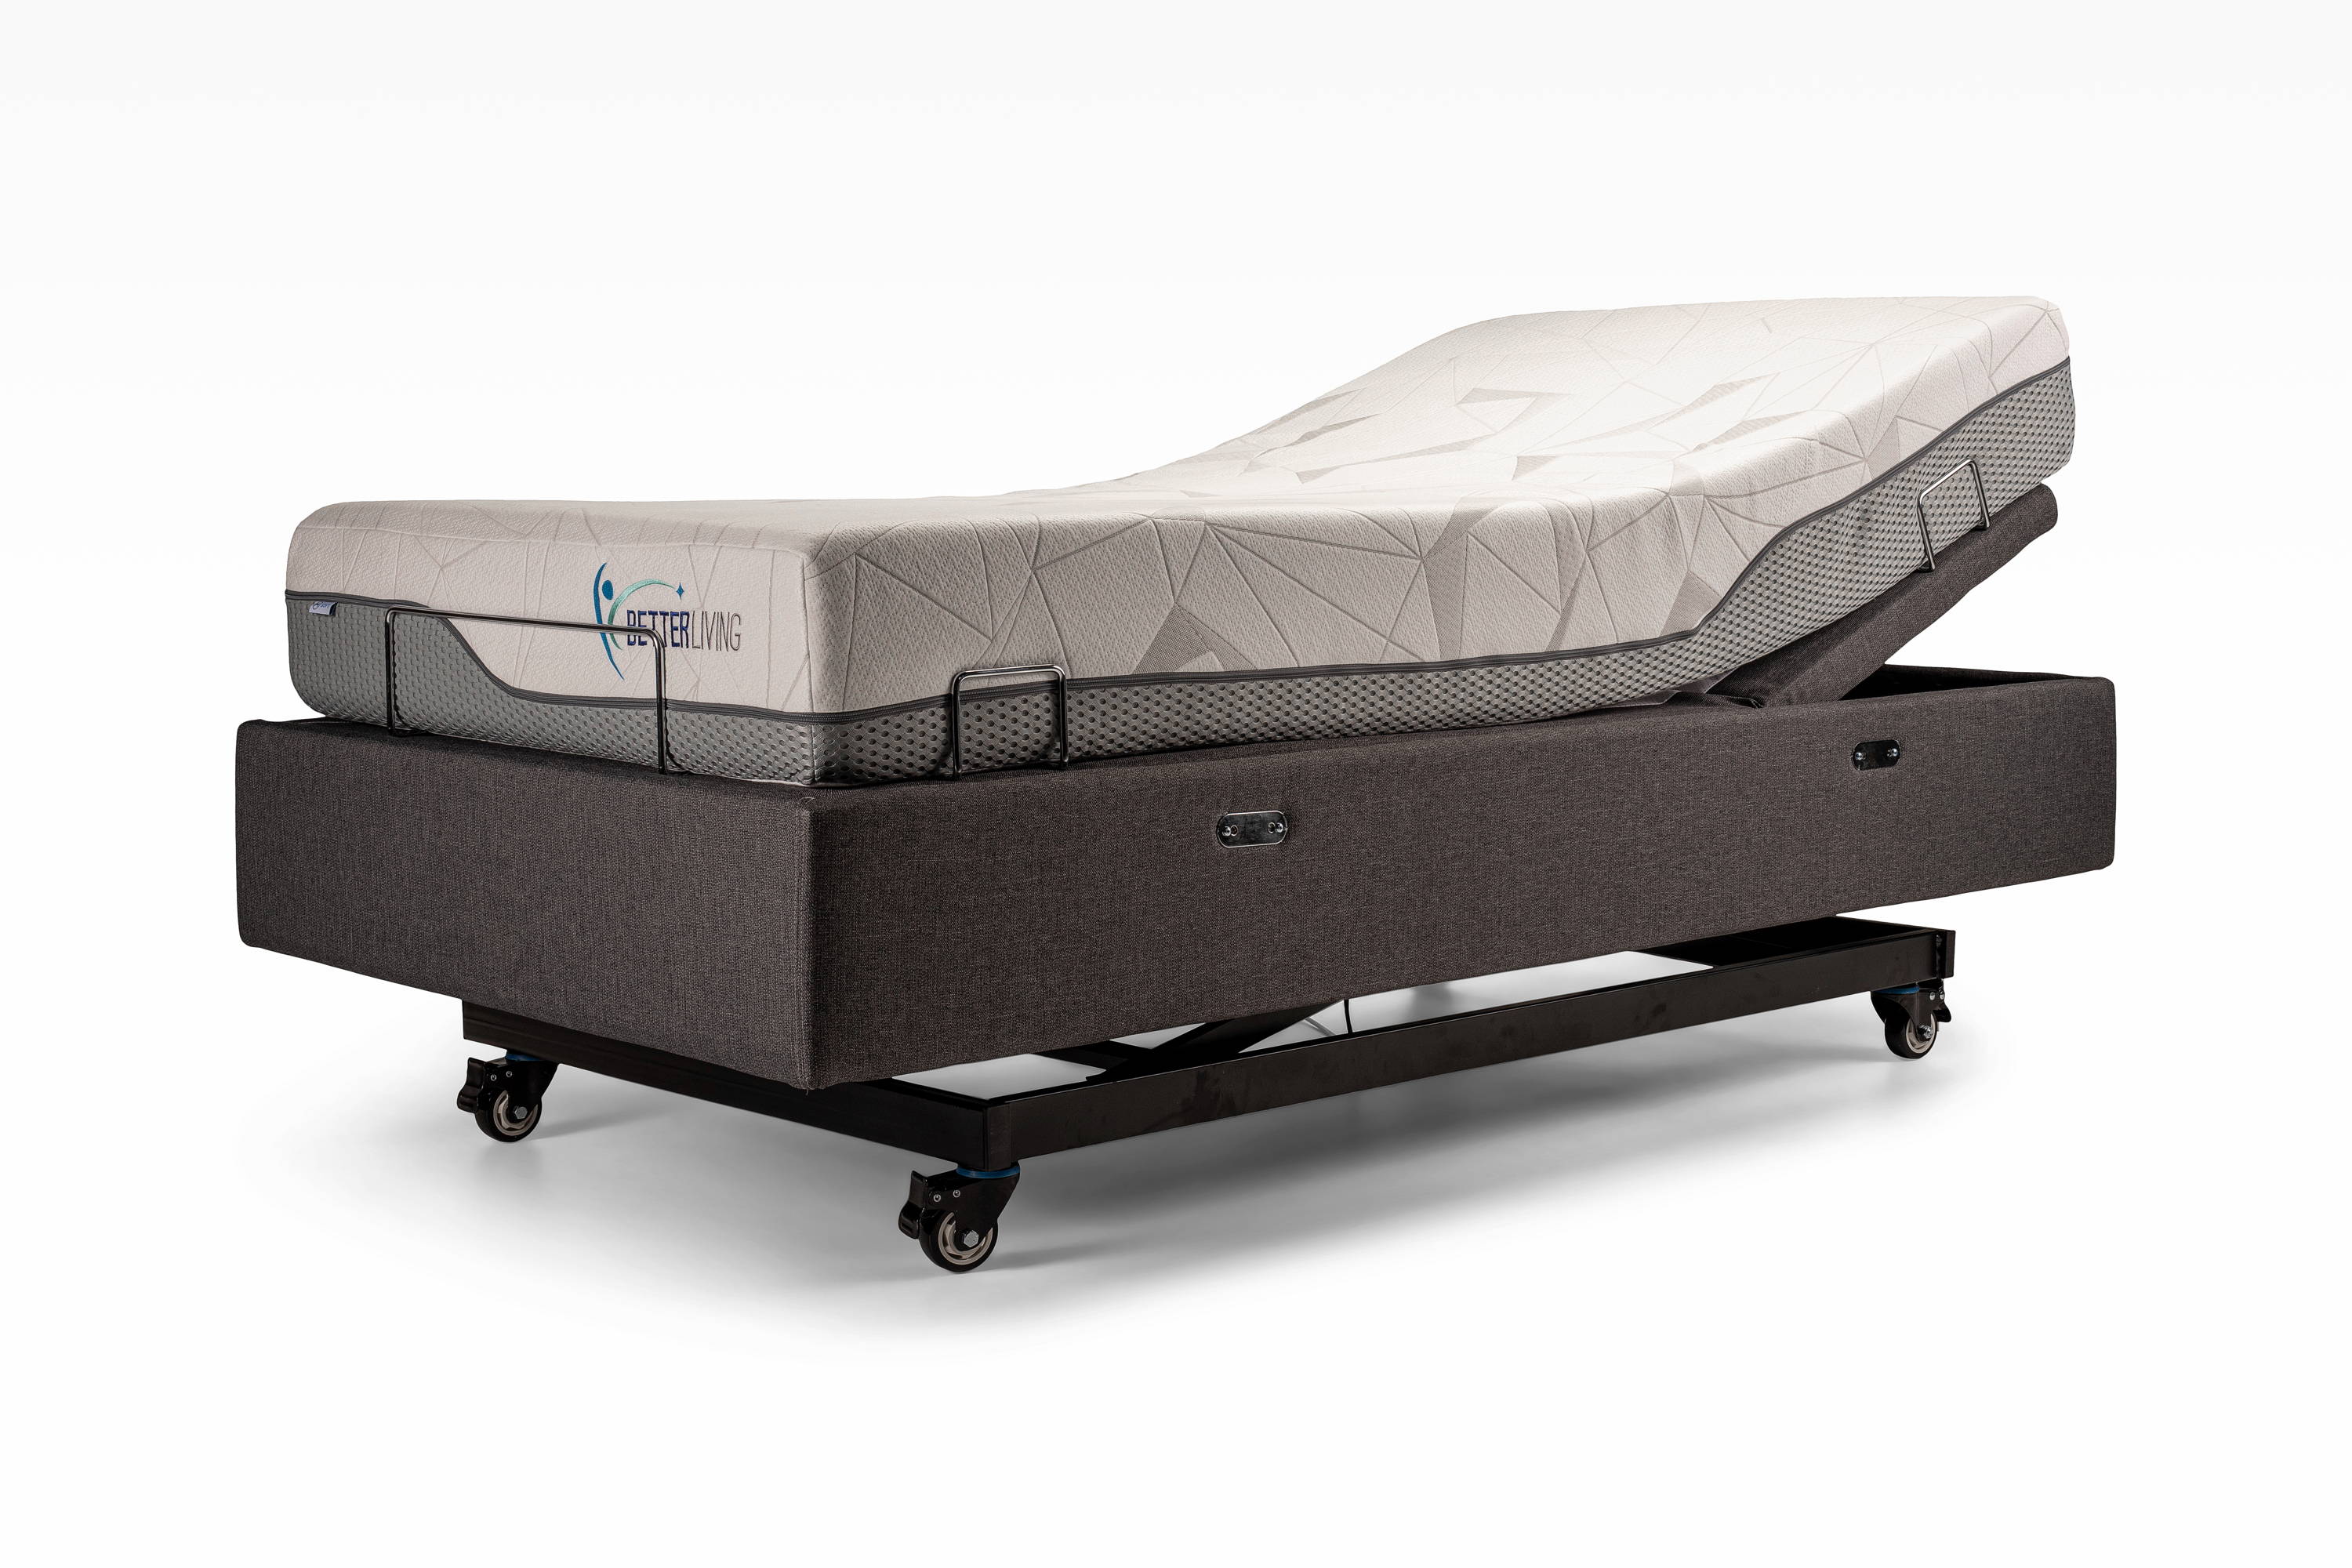 Hi-Lo adjustable bed